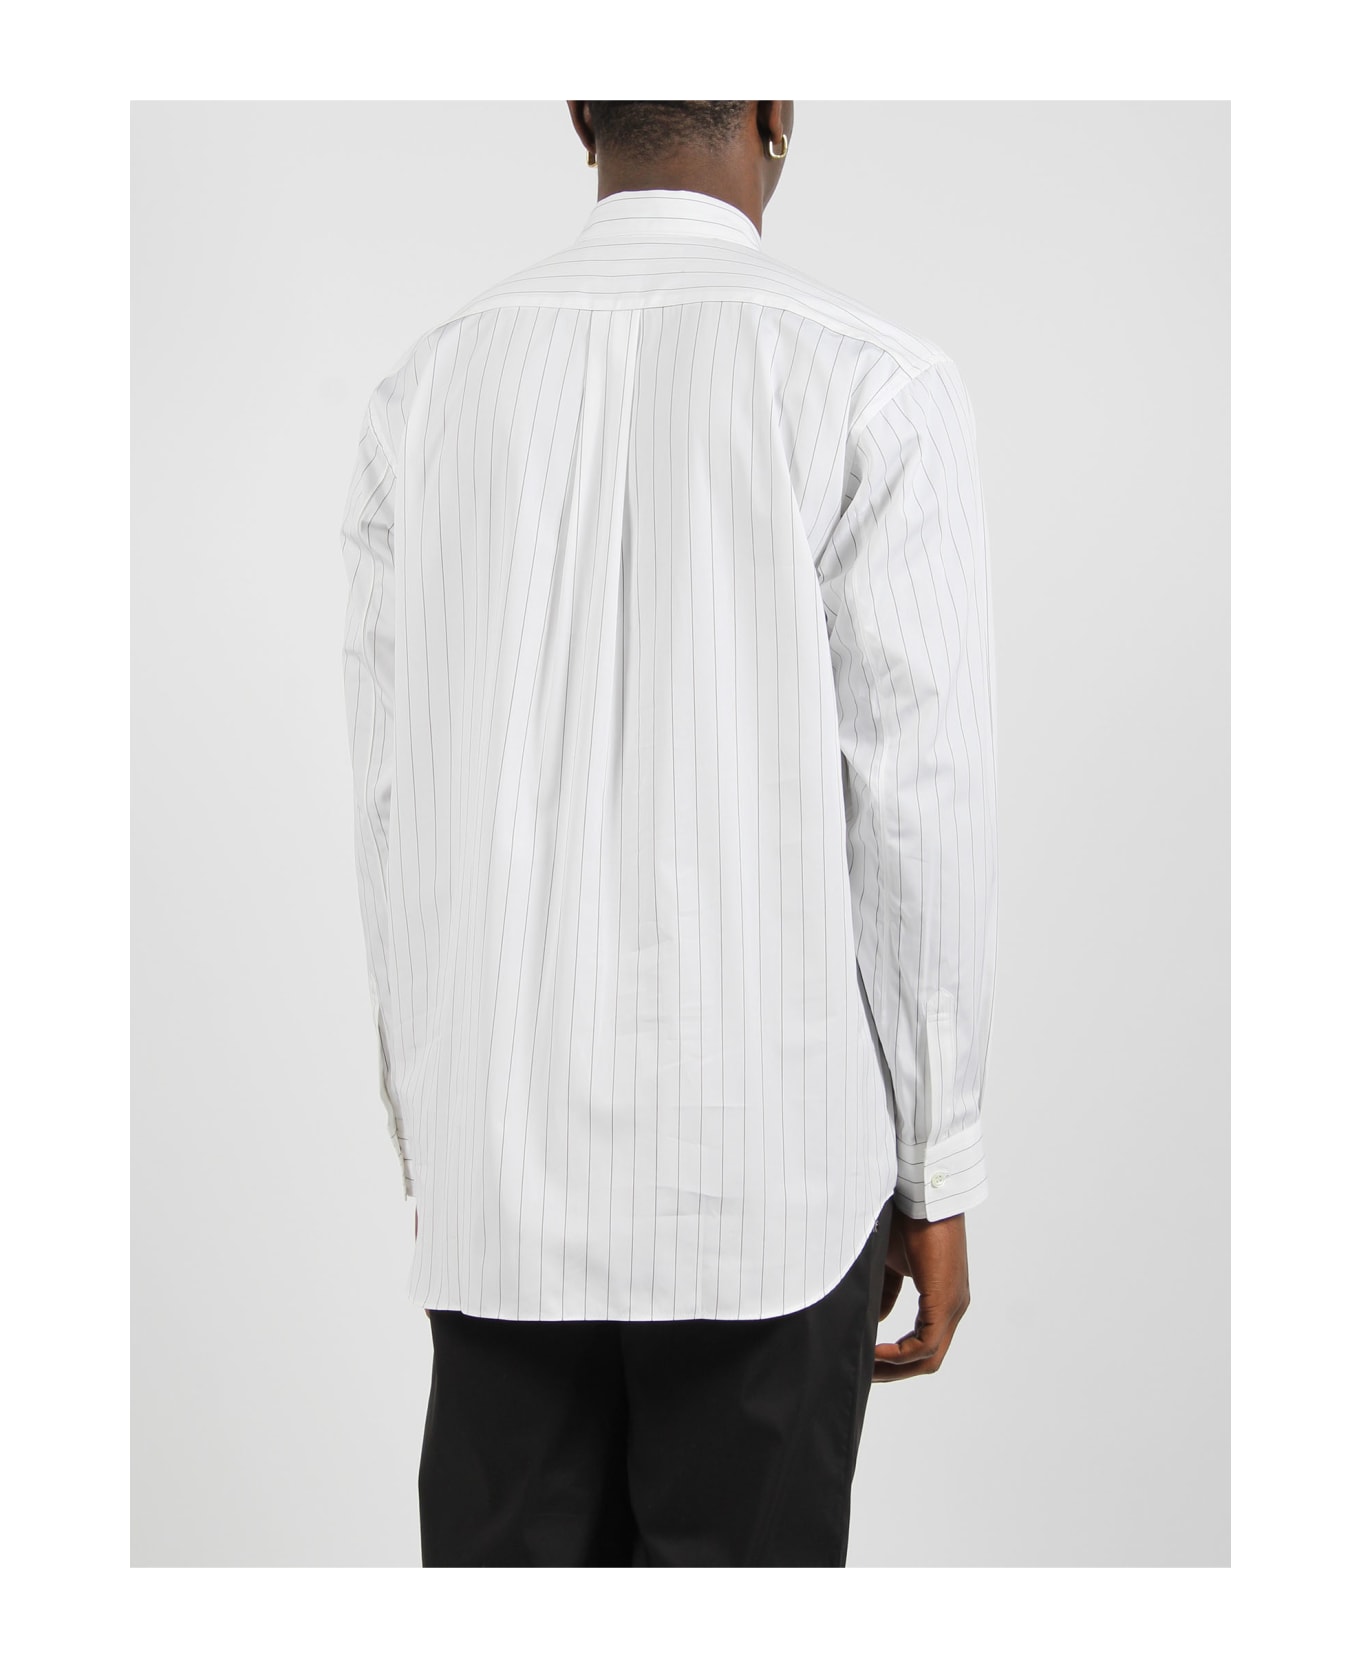 Comme des Garçons Shirt Striped Long Sleeve Shirt - White